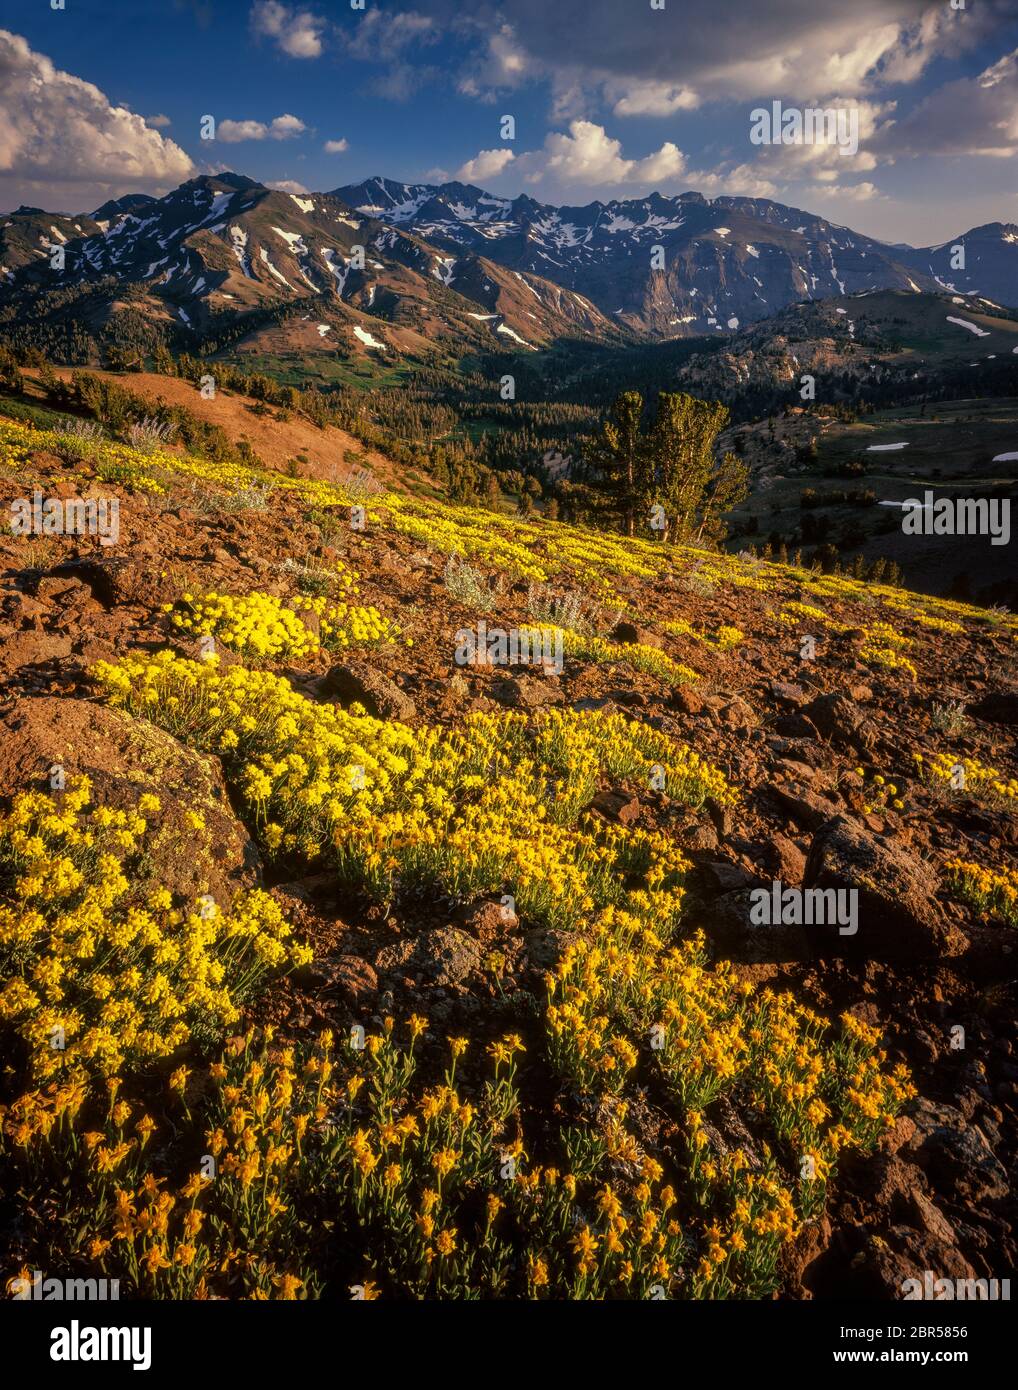 Fleurs de soufre, région sauvage de Carson-Iceberg, forêt nationale de Stanislaus, Sierra Nevada, Californie Banque D'Images